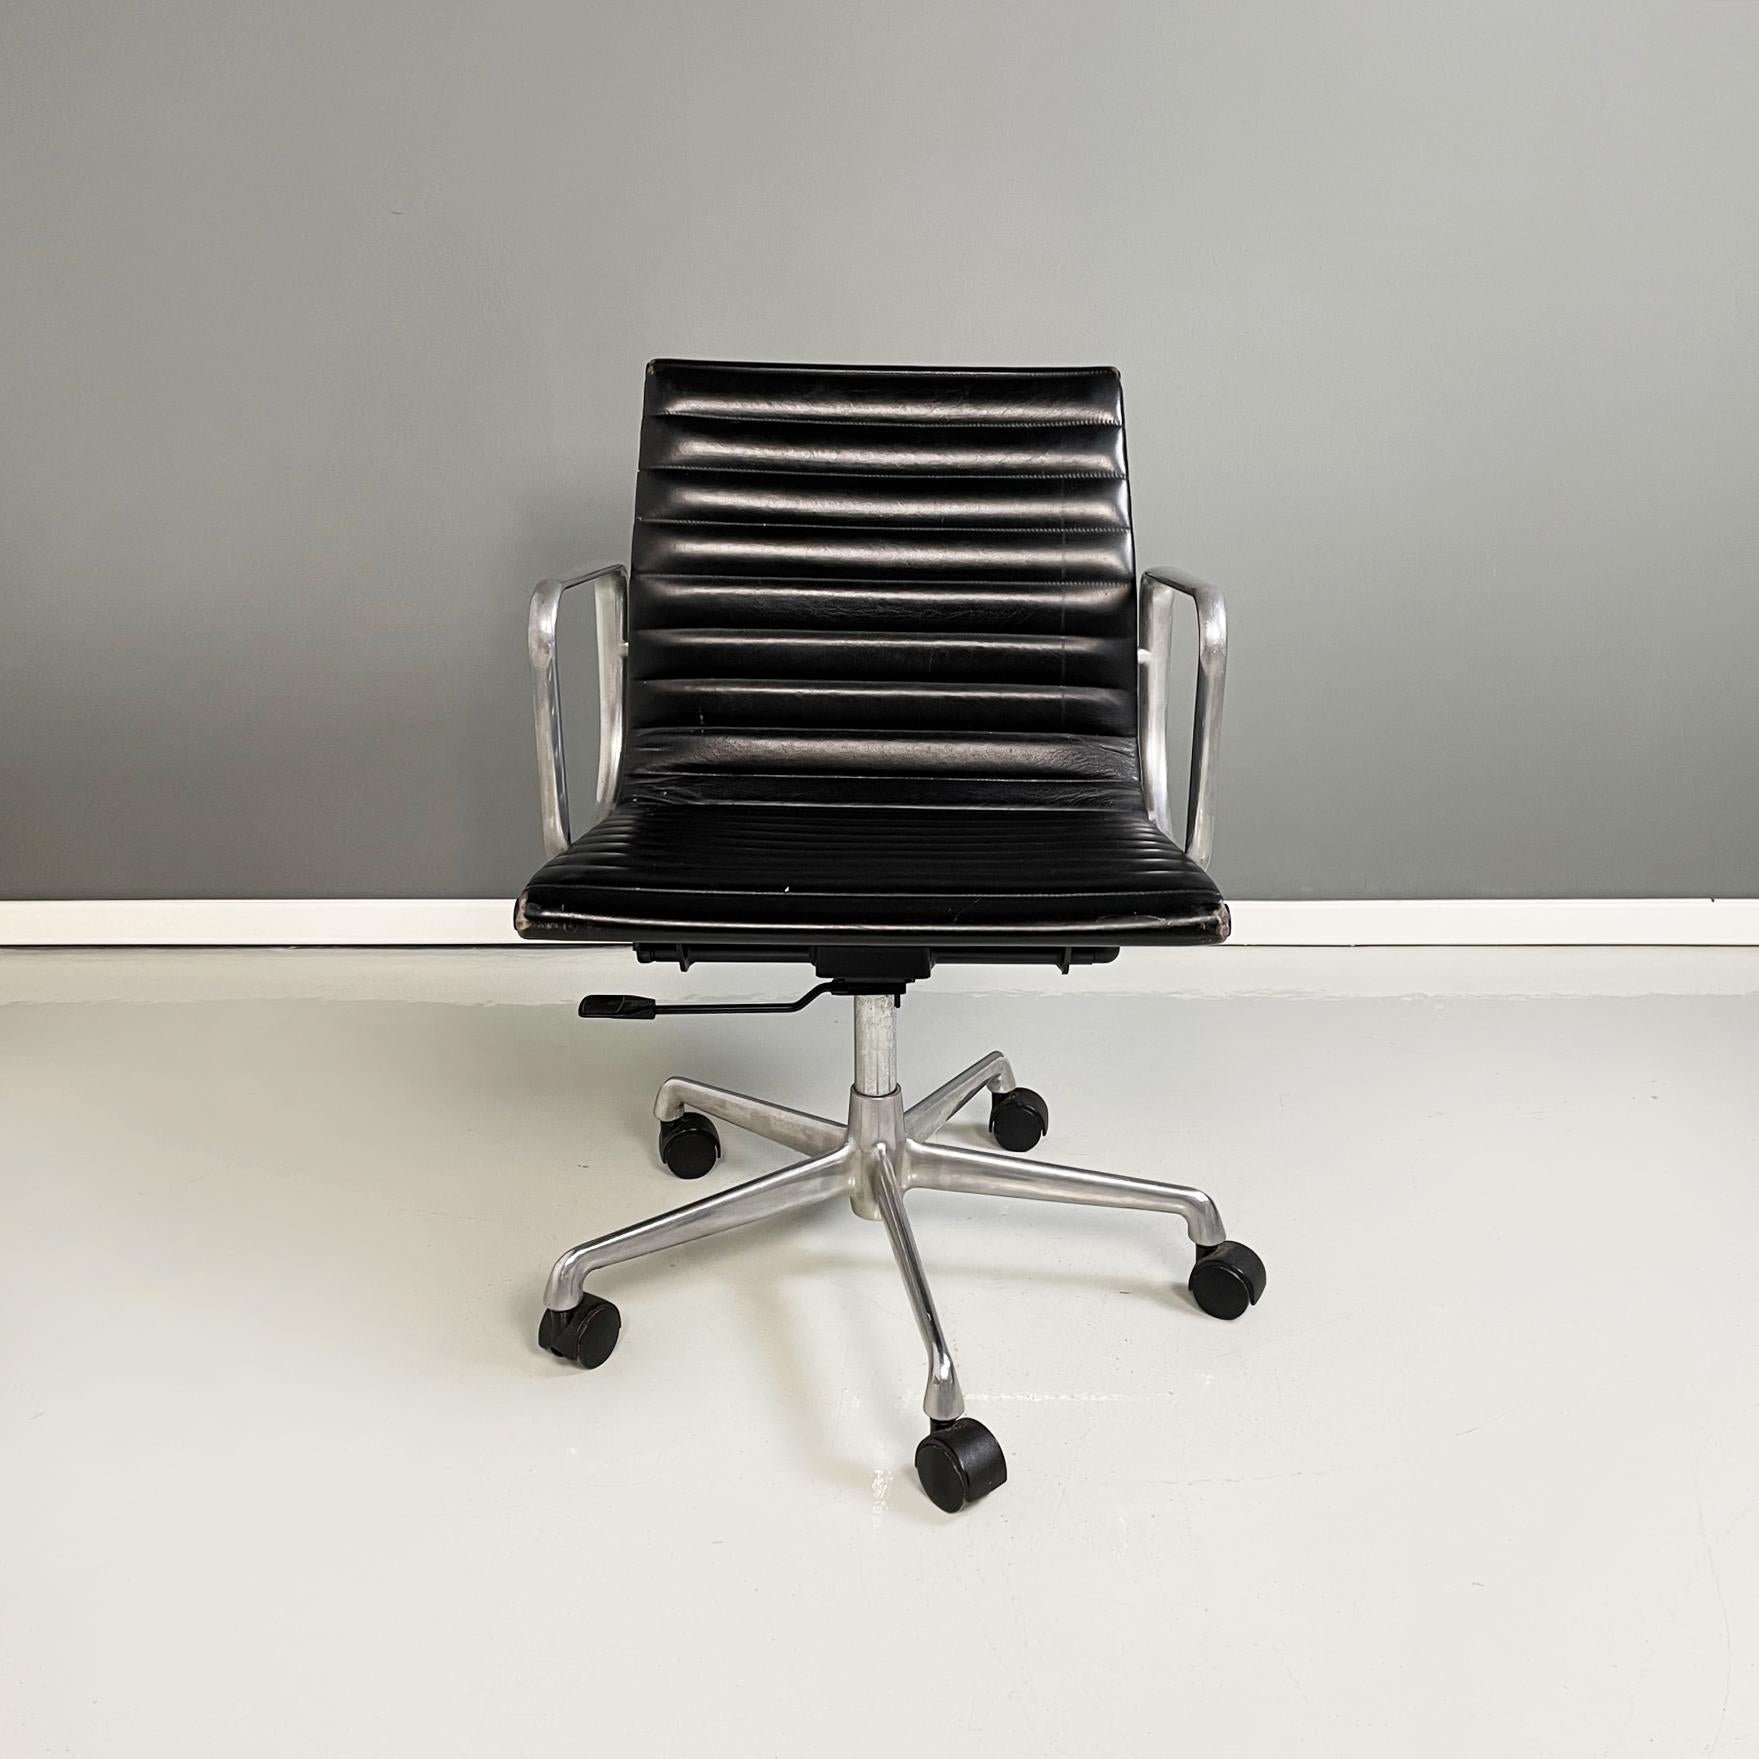 Italienische moderne Bürostühle mod. Ea-117 Aluminium Gruppe von Charles und Ray Eames für ICF, 1970er Jahre
Satz von drei Bürostühlen mod. Ea-117Aluminium Gruppe in schwarzem Leder und Aluminium. Der Sitz und die Rückenlehne sind mit schwarzem